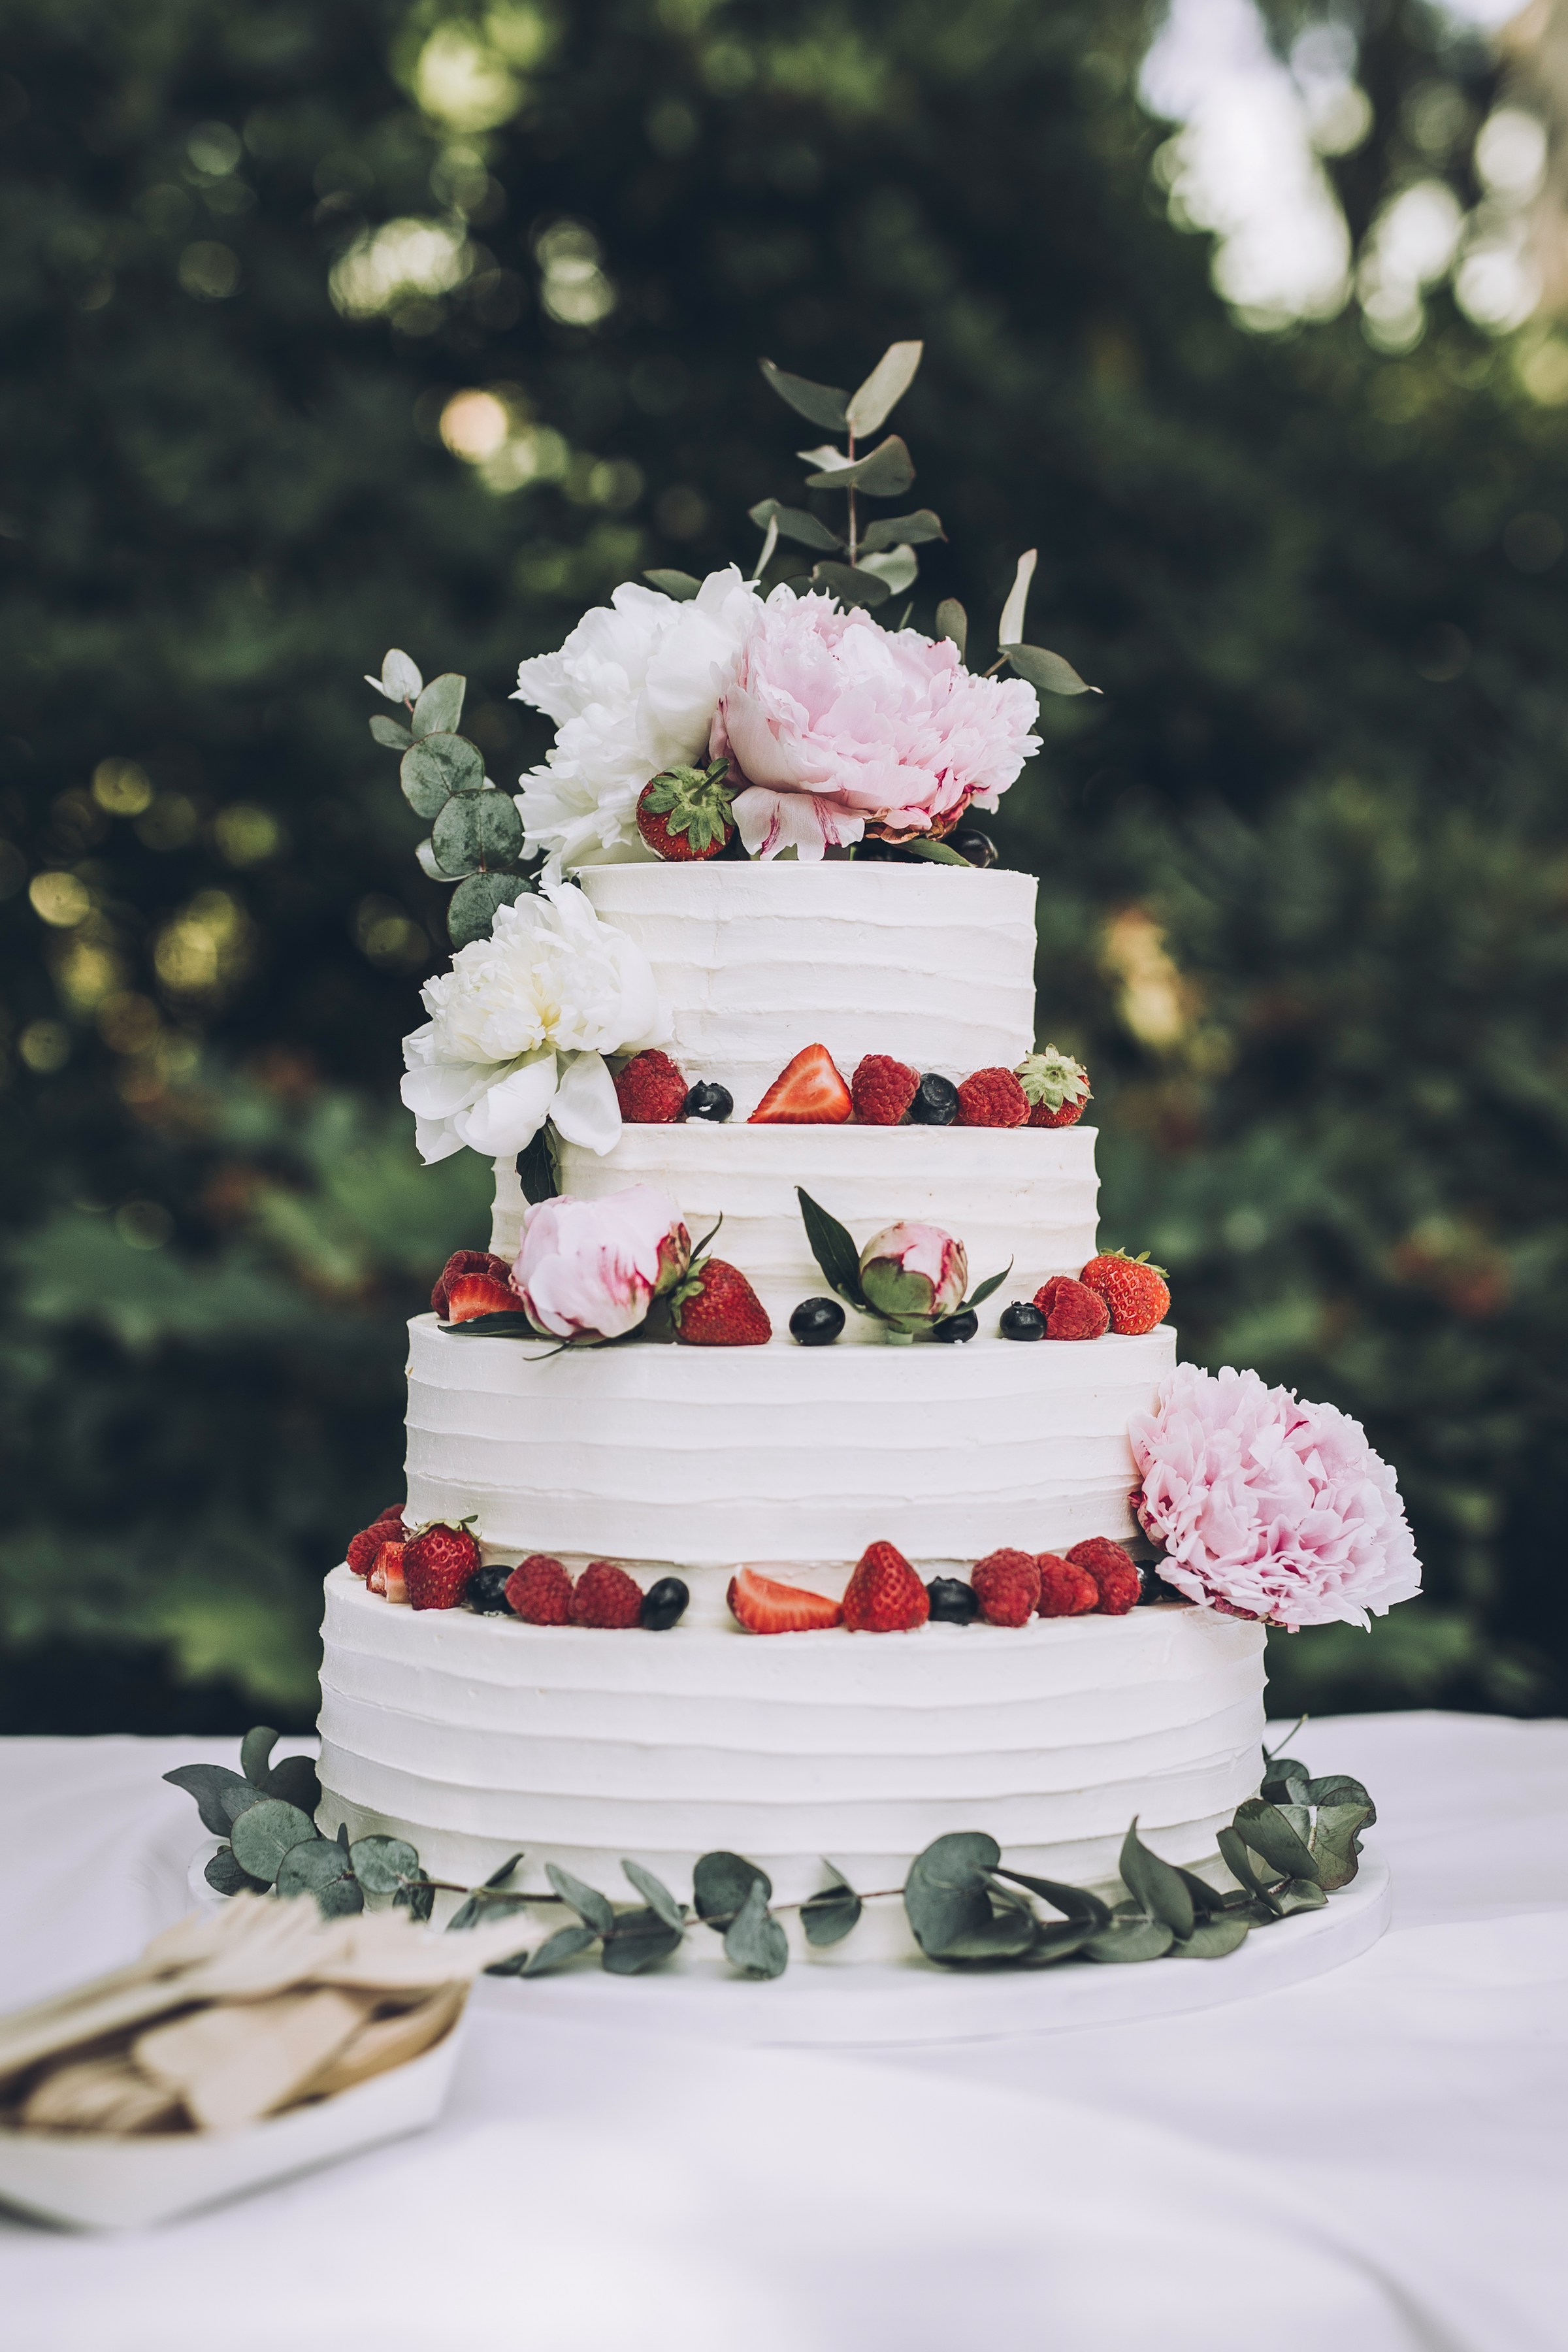 Eine weiße Hochzeitstorte mit Früchten | Quelle: Unsplash